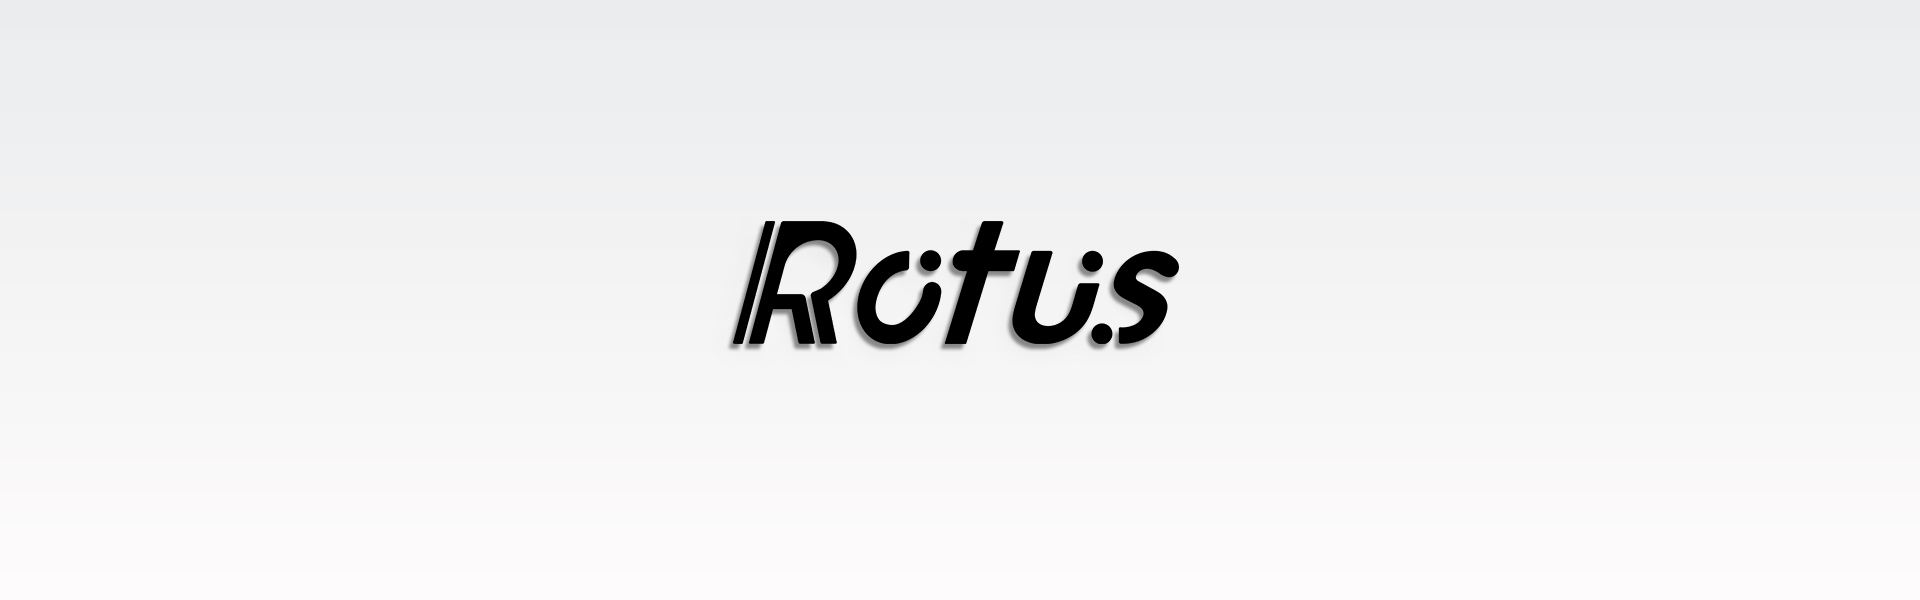 Rotus_